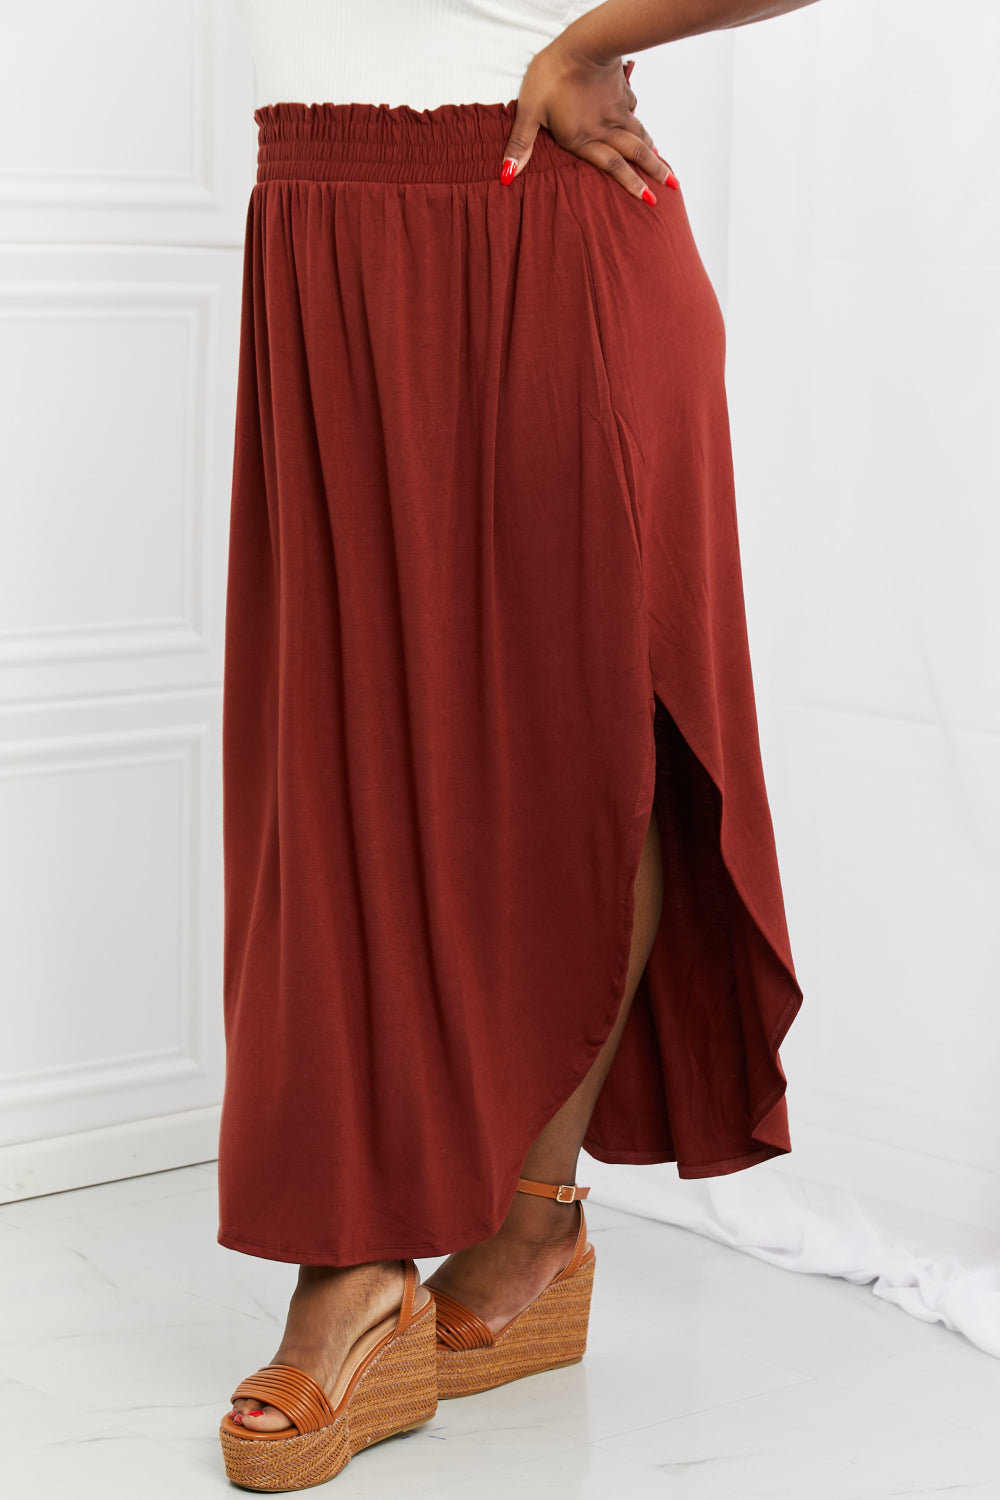 Scrunch Skirt in Dark Rust - AnnRose Boutique